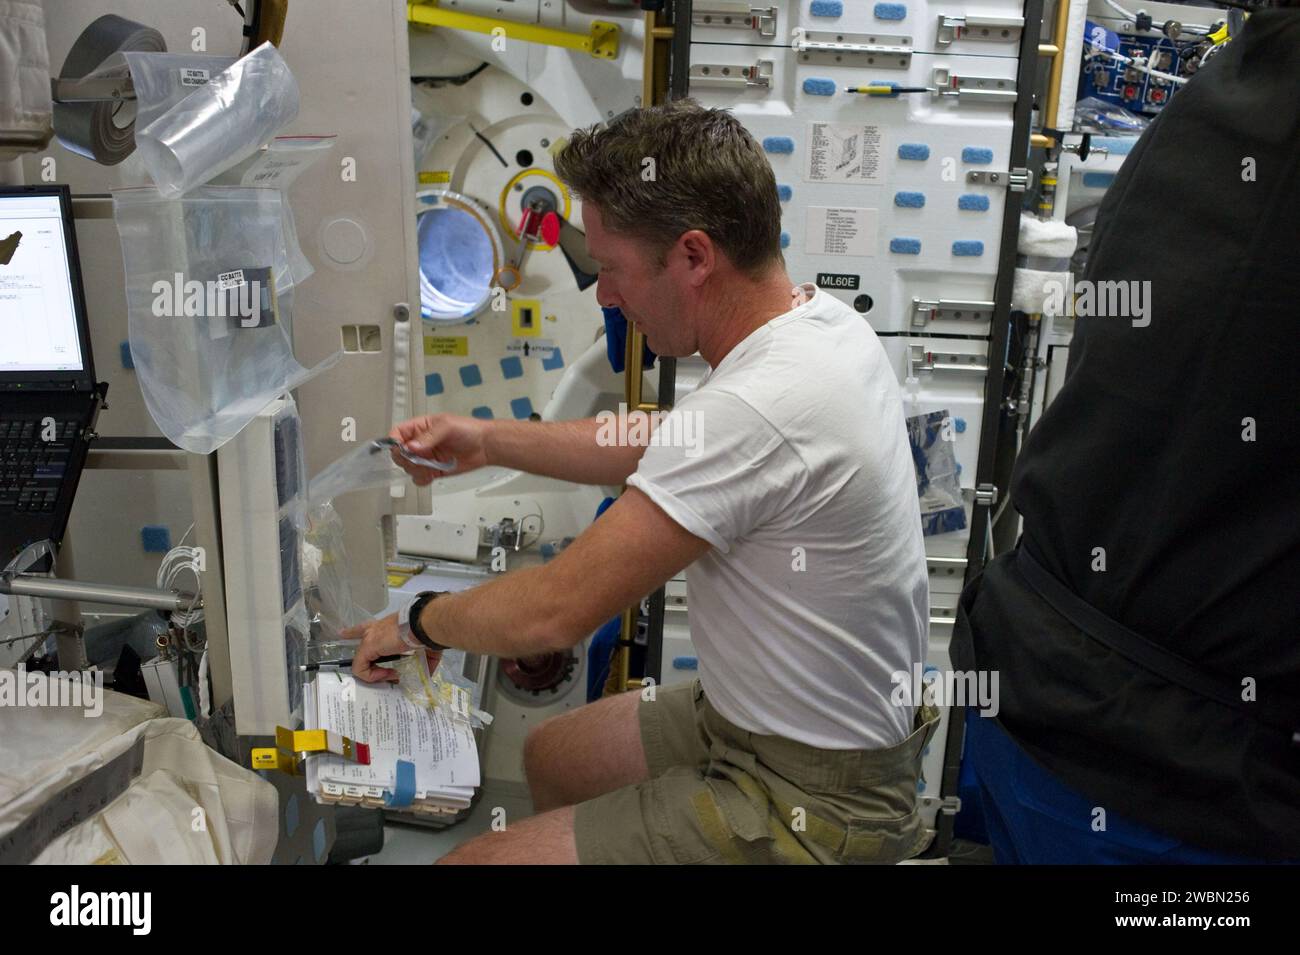 S134-e-007010 (18 maggio 2011) --- l'astronauta dell'Agenzia spaziale europea Roberto Vittori, specialista della missione STS-134, lavora sul ponte centrale dello Space Shuttle Endeavour durante le attività del terzo giorno di volo. Foto Stock